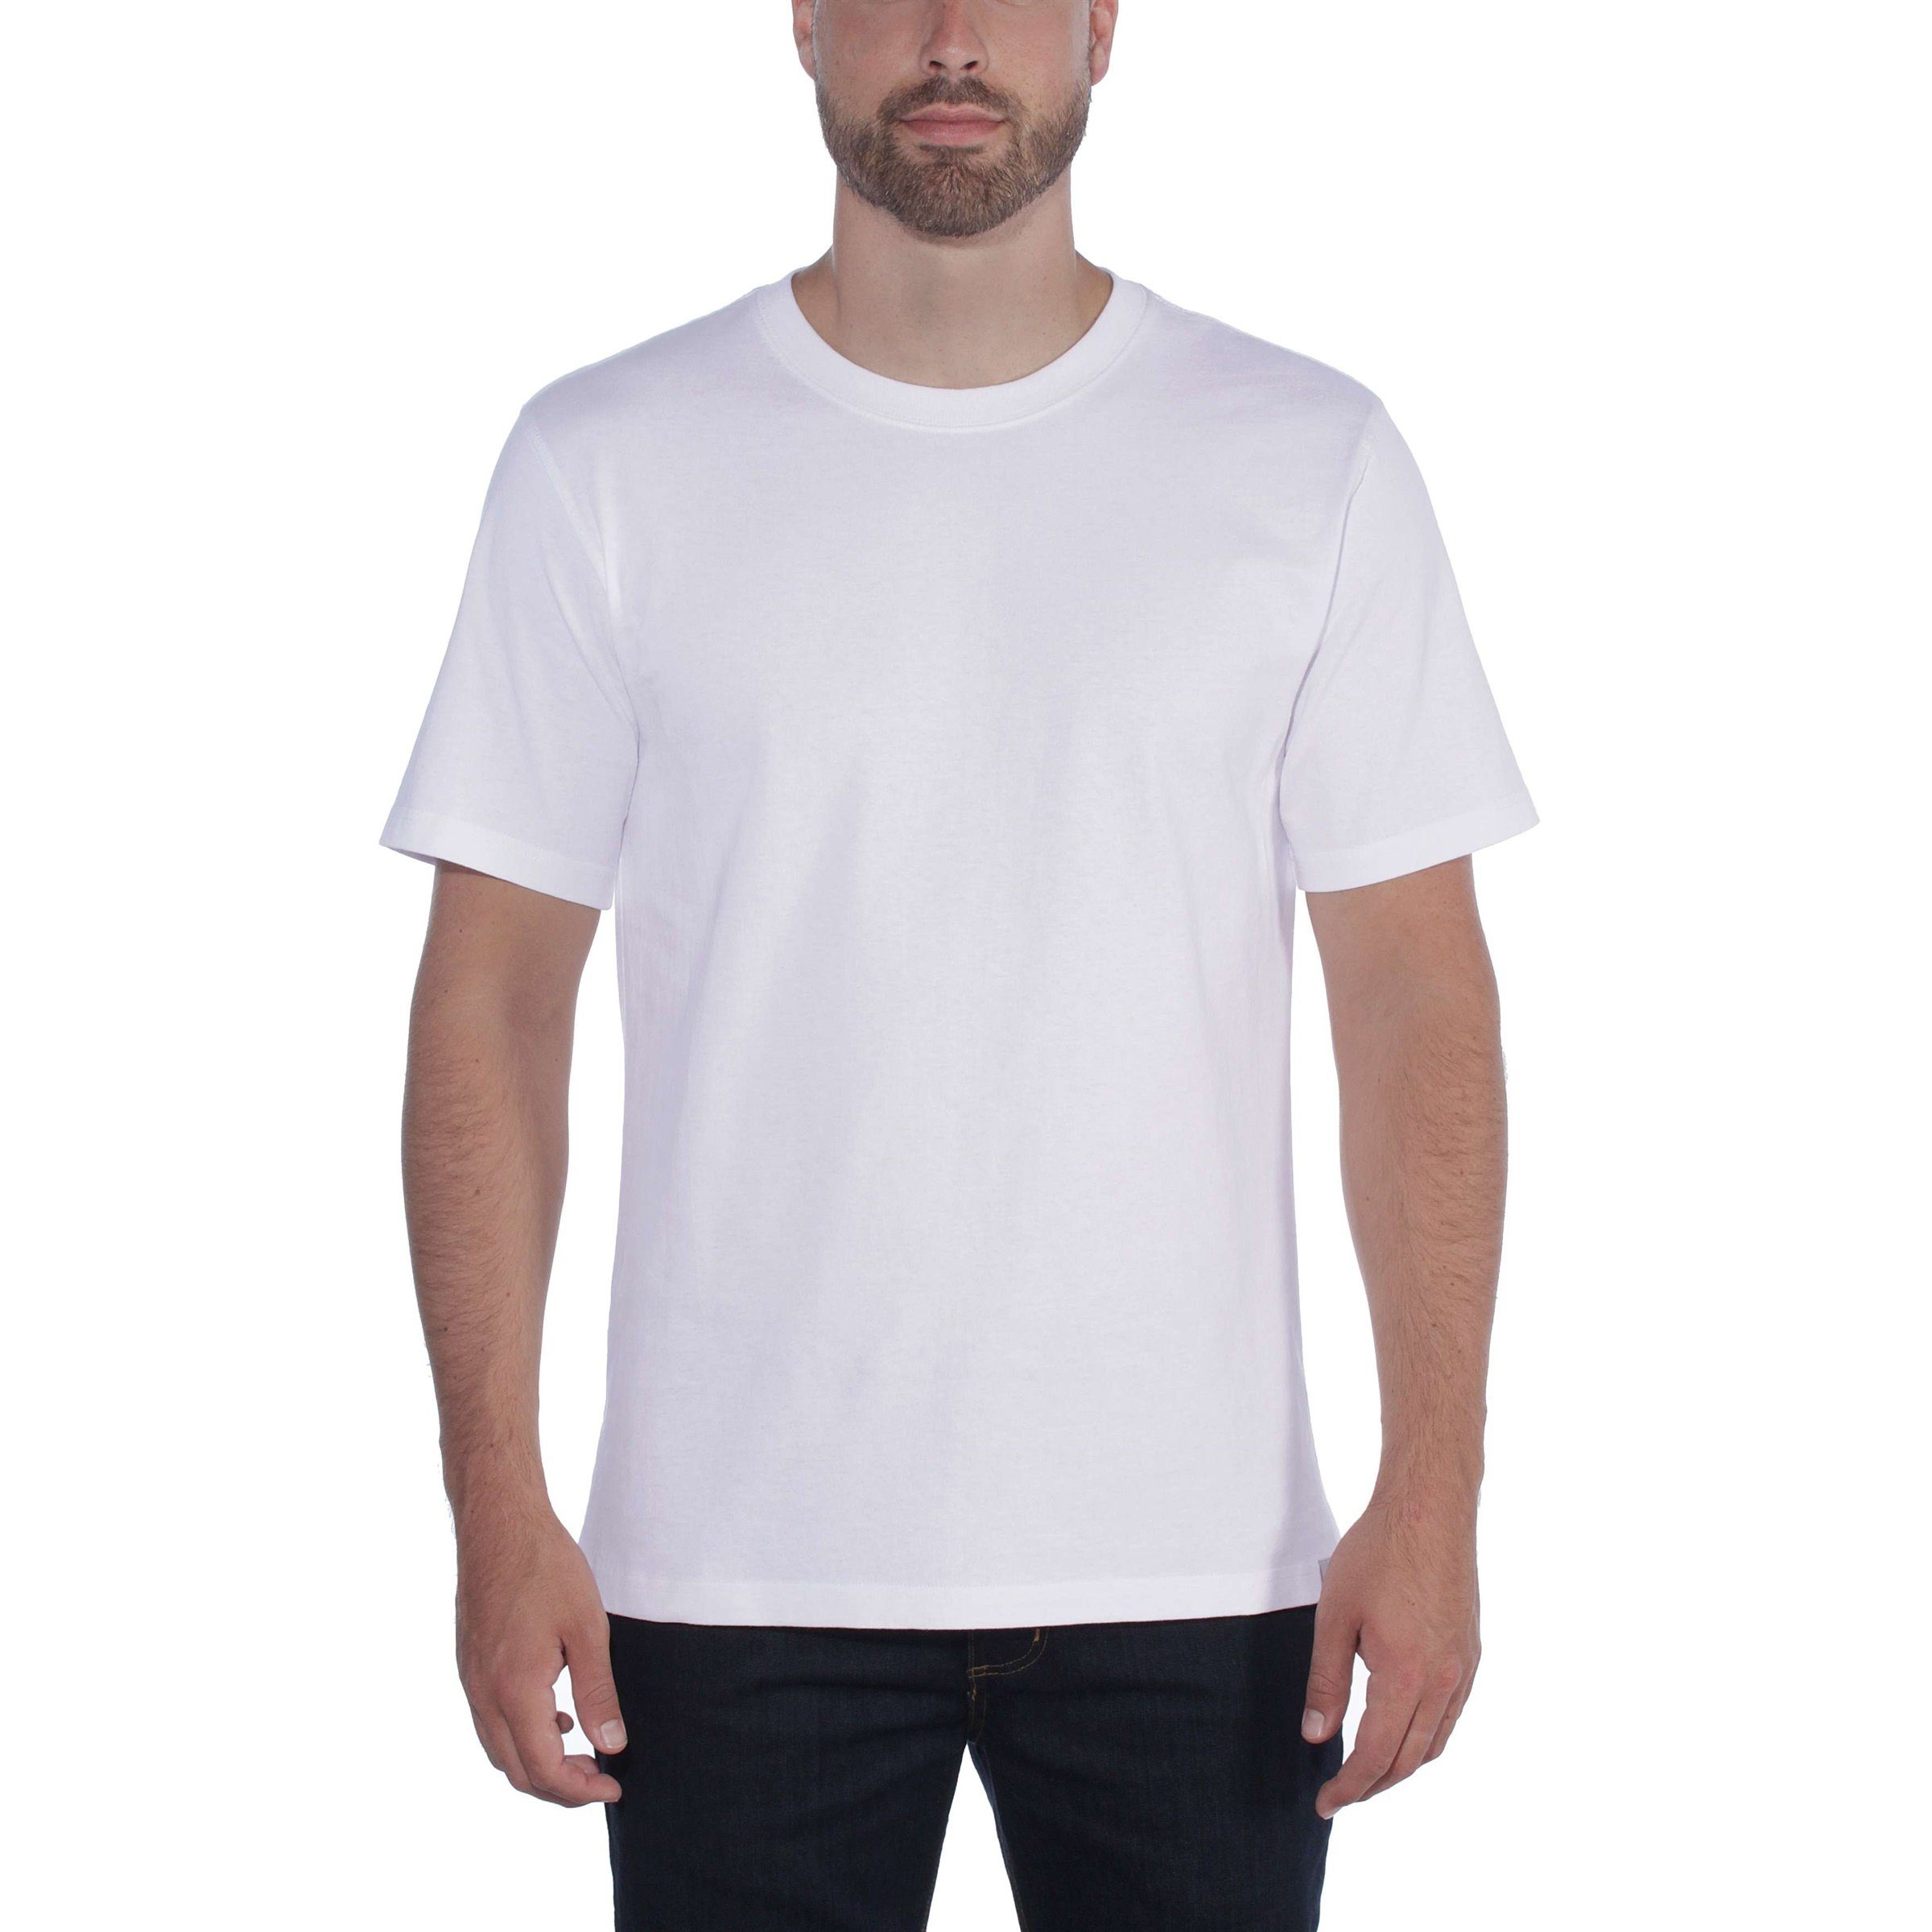 T-Shirt Relaxed Carhartt Adult white Short-Sleeve Fit Herren Carhartt T-Shirt Heavyweight